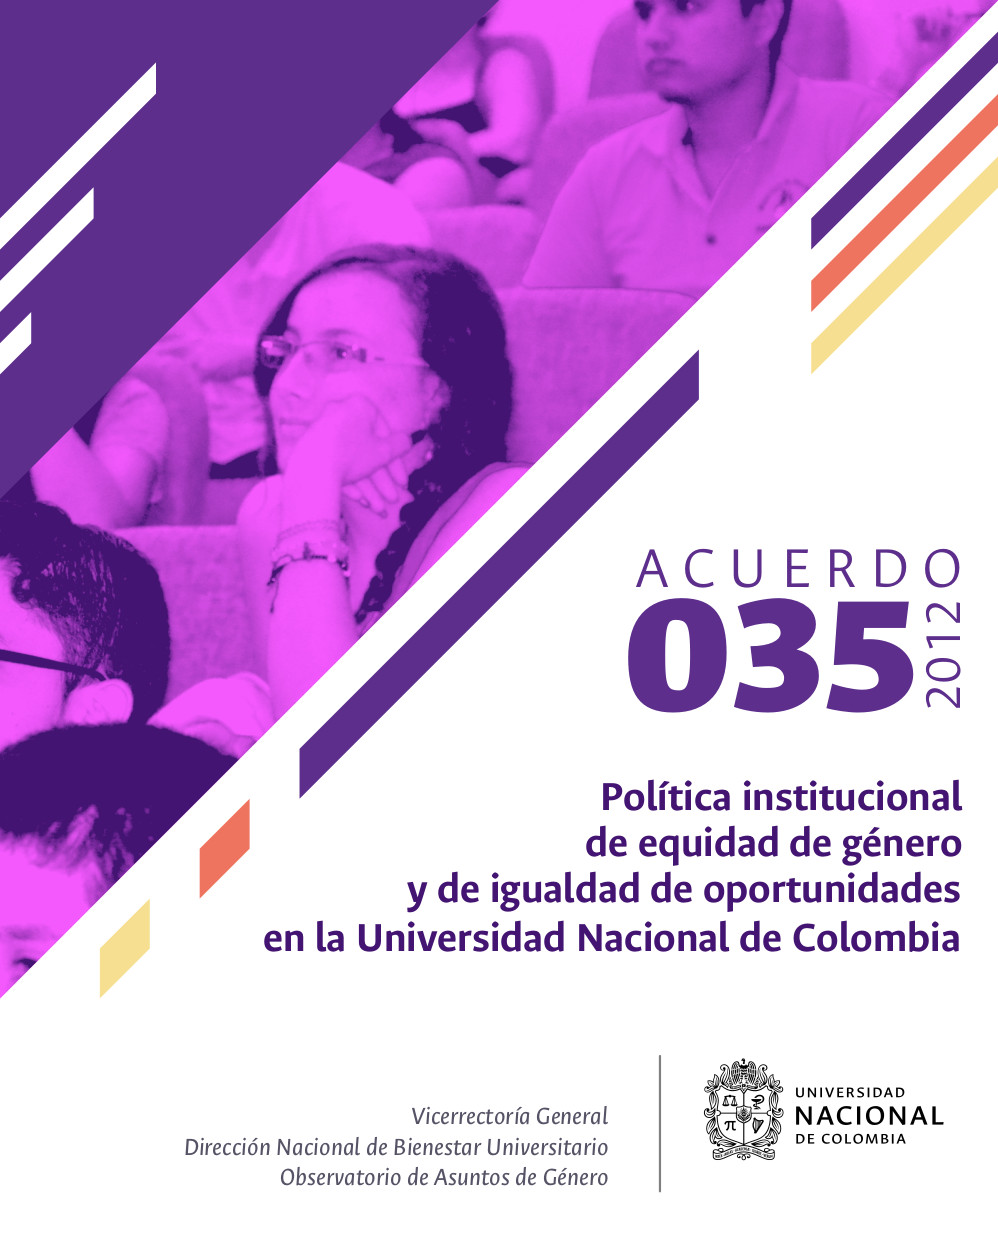 Acuerdo 035 del 2012 - Política institucional de equidad de género y de igualdad de oportunidades en la Universidad Nacional de Colombia